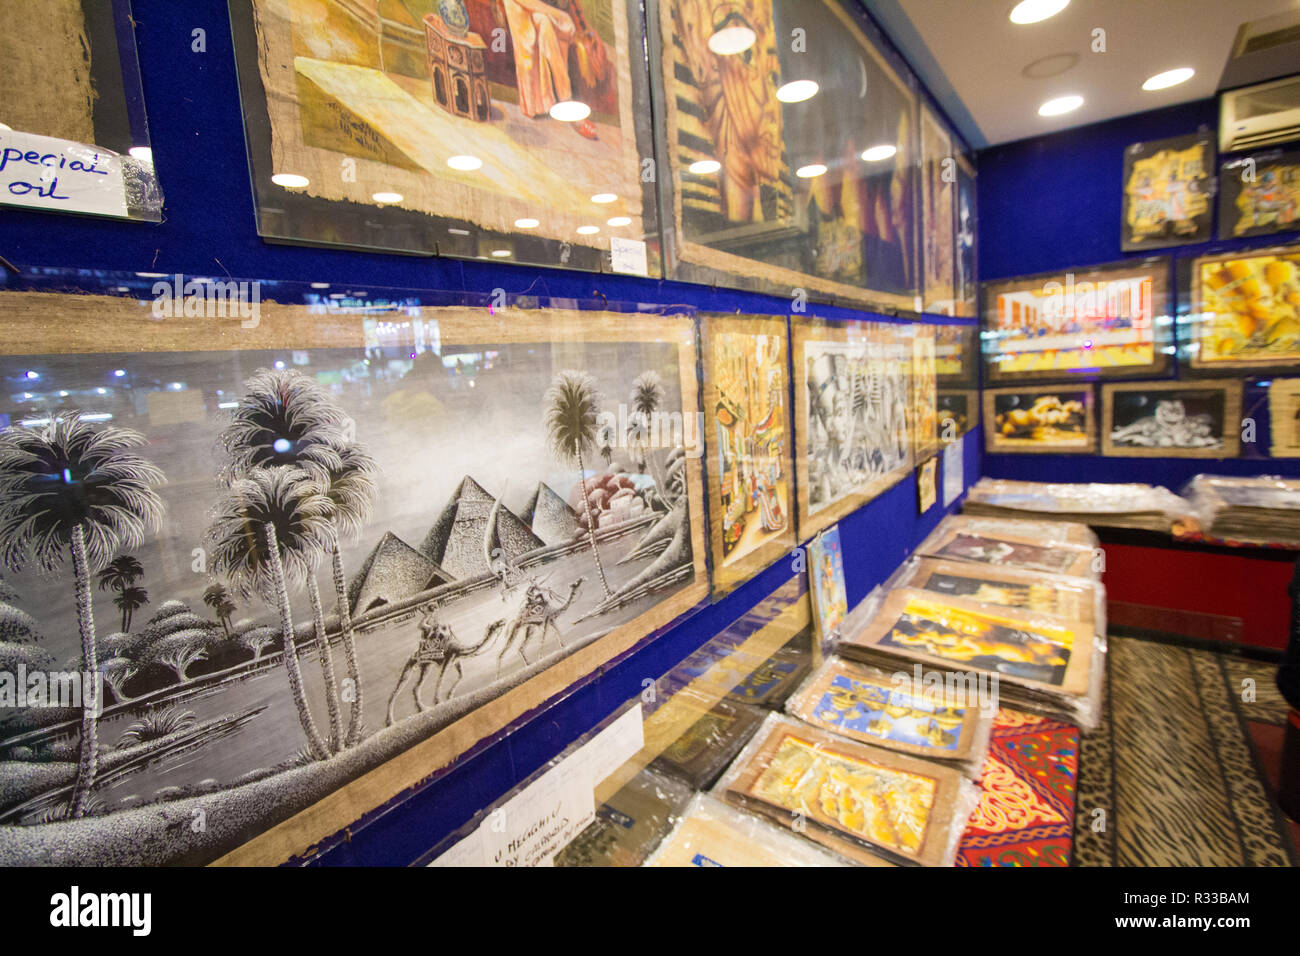 El-Shaikh Sharm, Egypte - Novembre 2, 2018 :- photo pour peintures pharaoniques shop dans la ville égyptienne de Charm el-Cheikh, sa montre quelques painti égyptien Banque D'Images